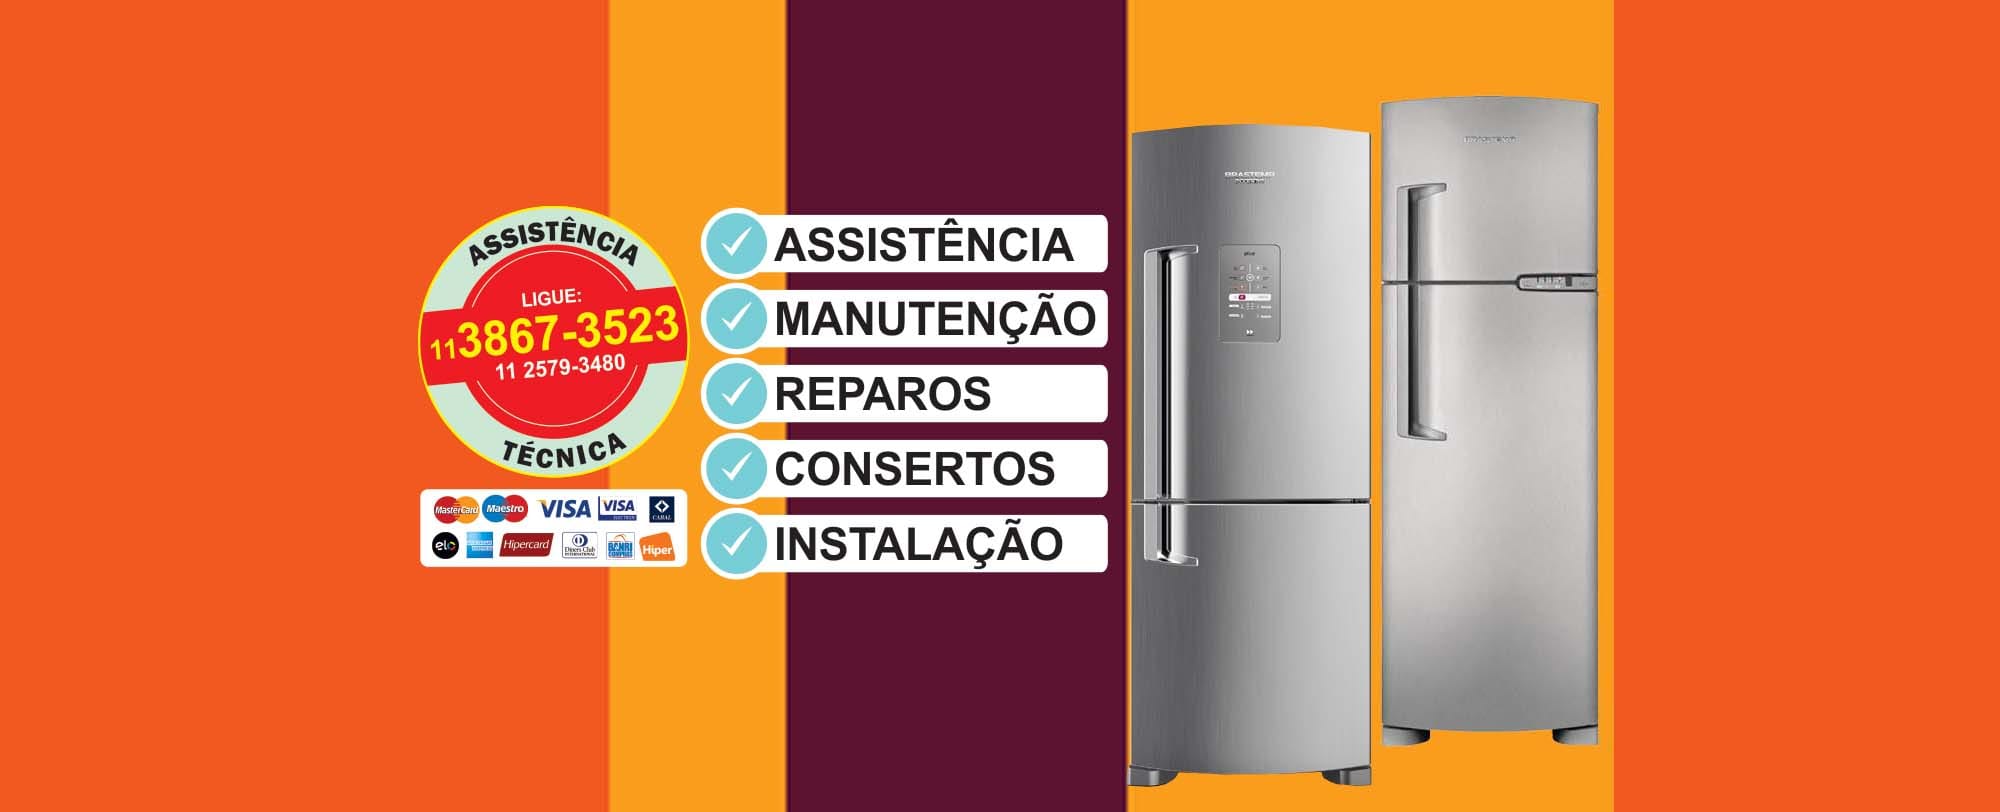 assistencia tecnica Geladeira Brastemp Clean All Refrigerator 330 Litros